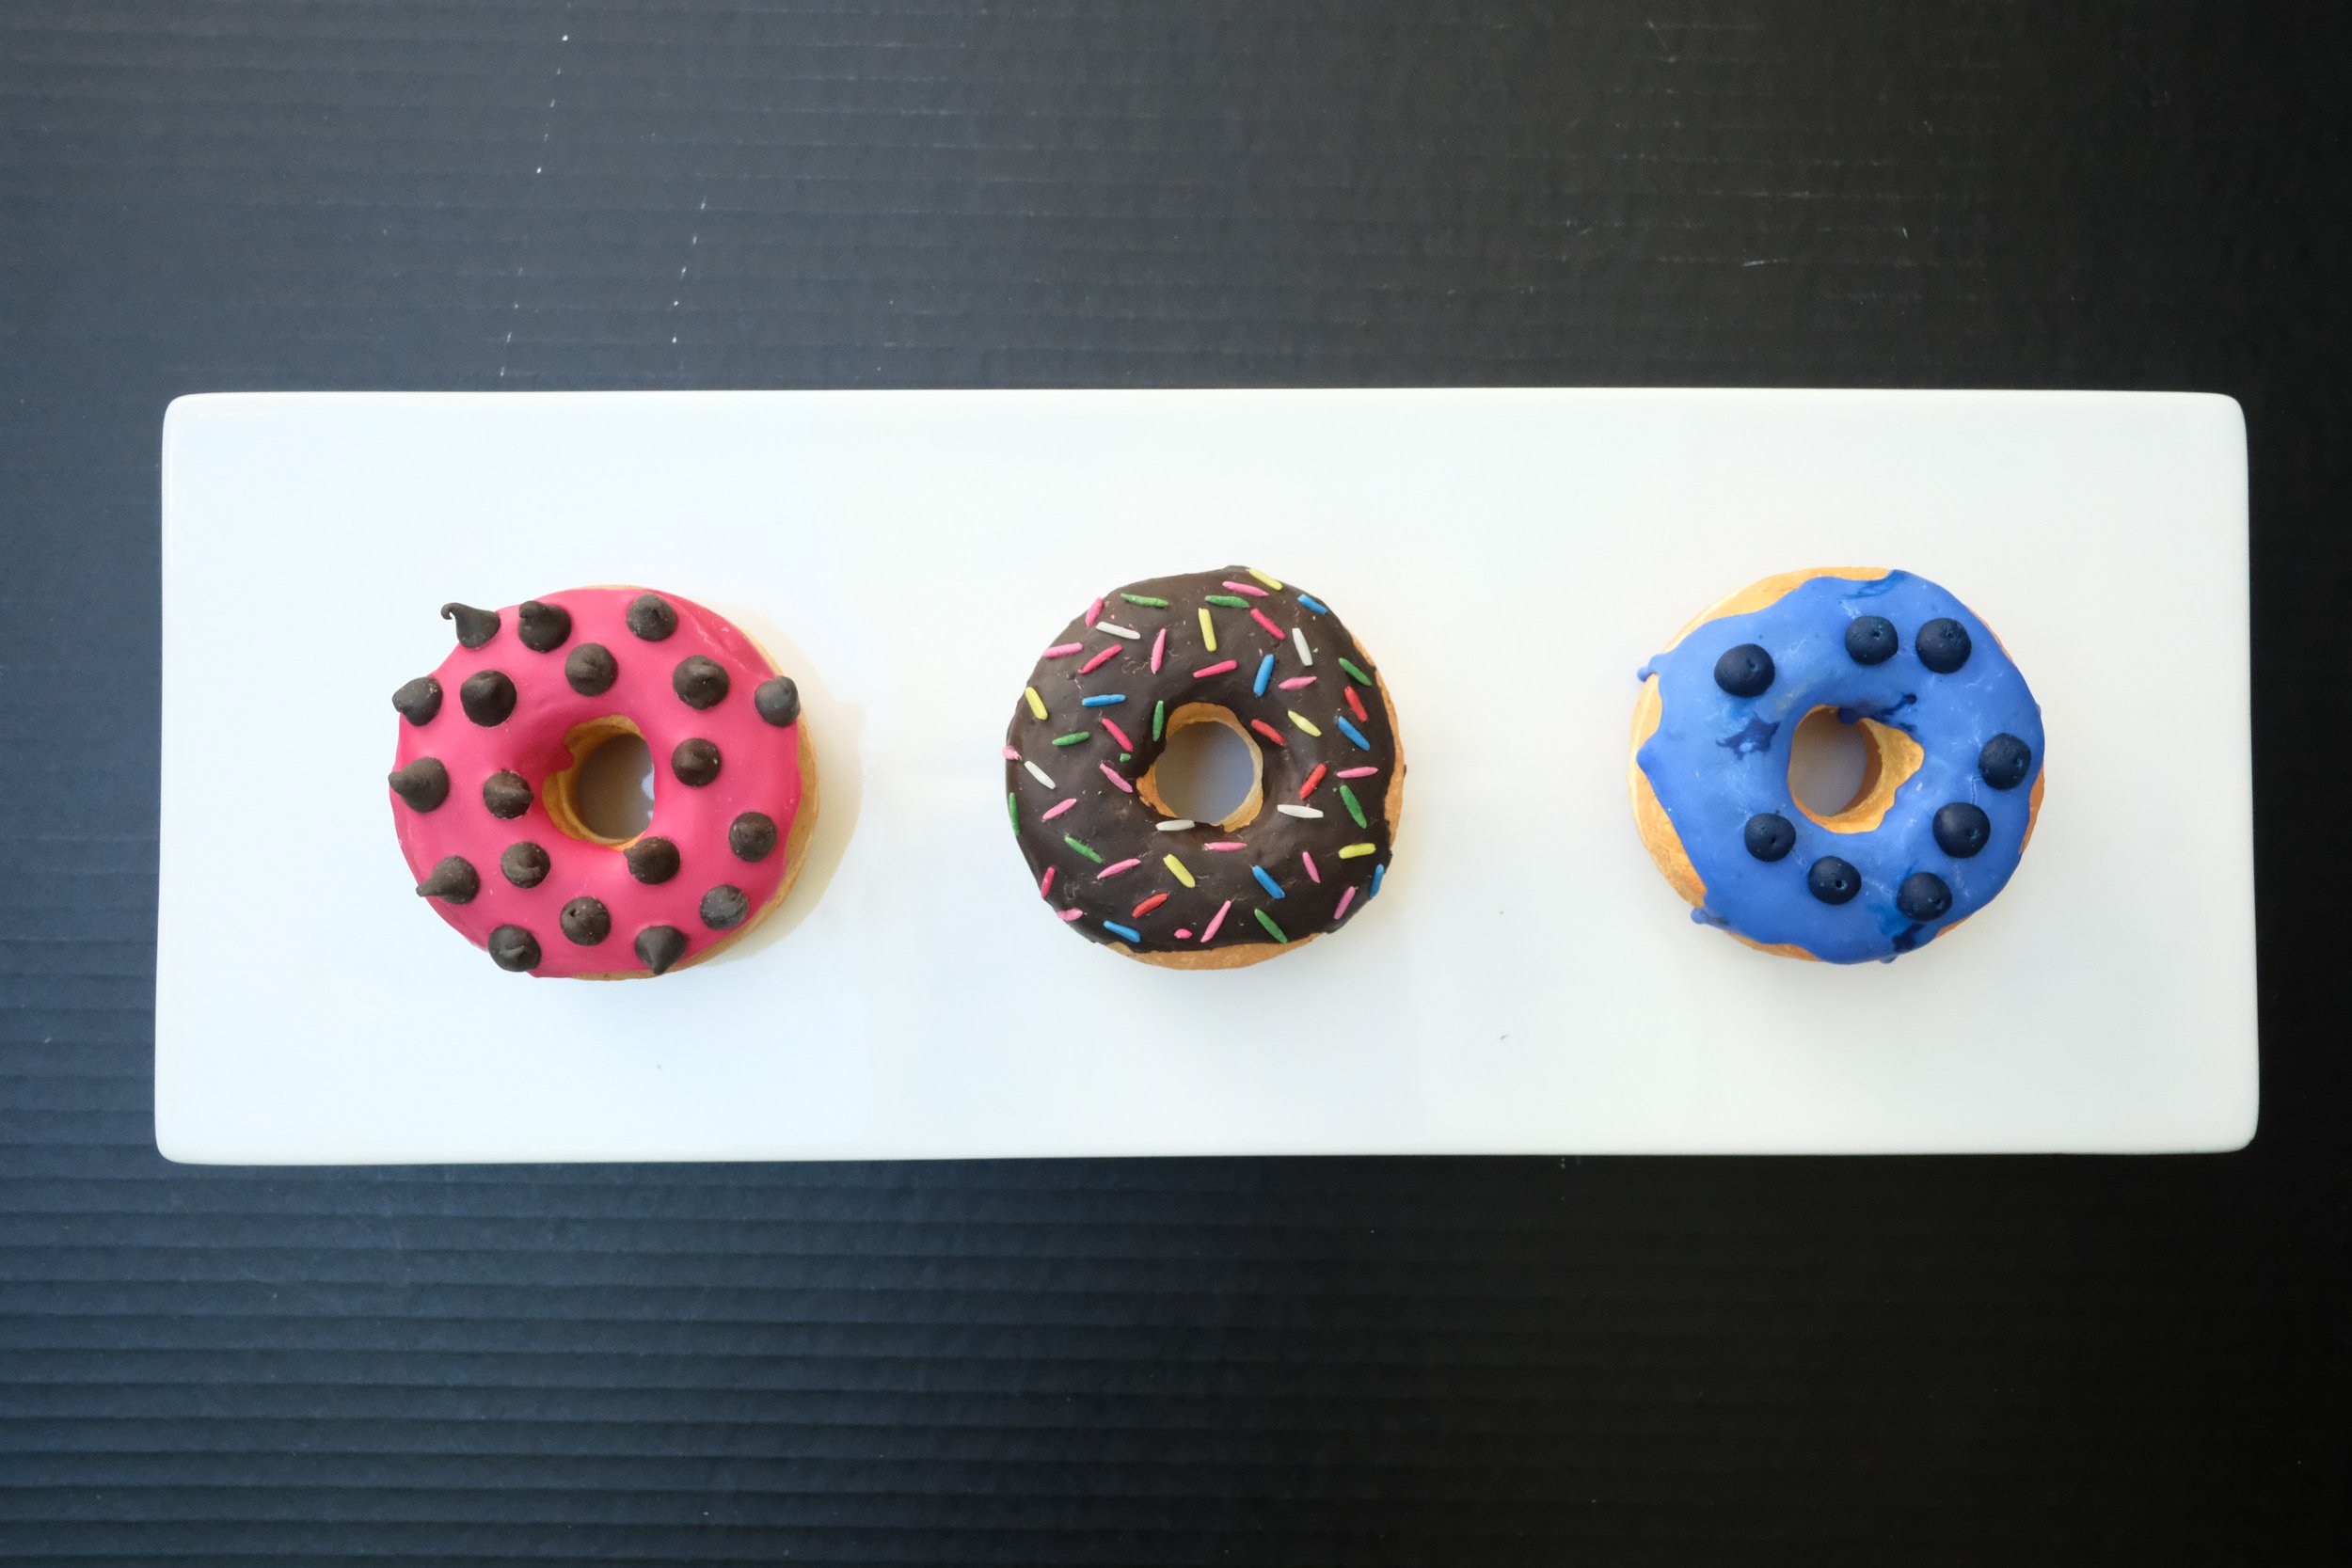 Glazed Donuts by Jane Way